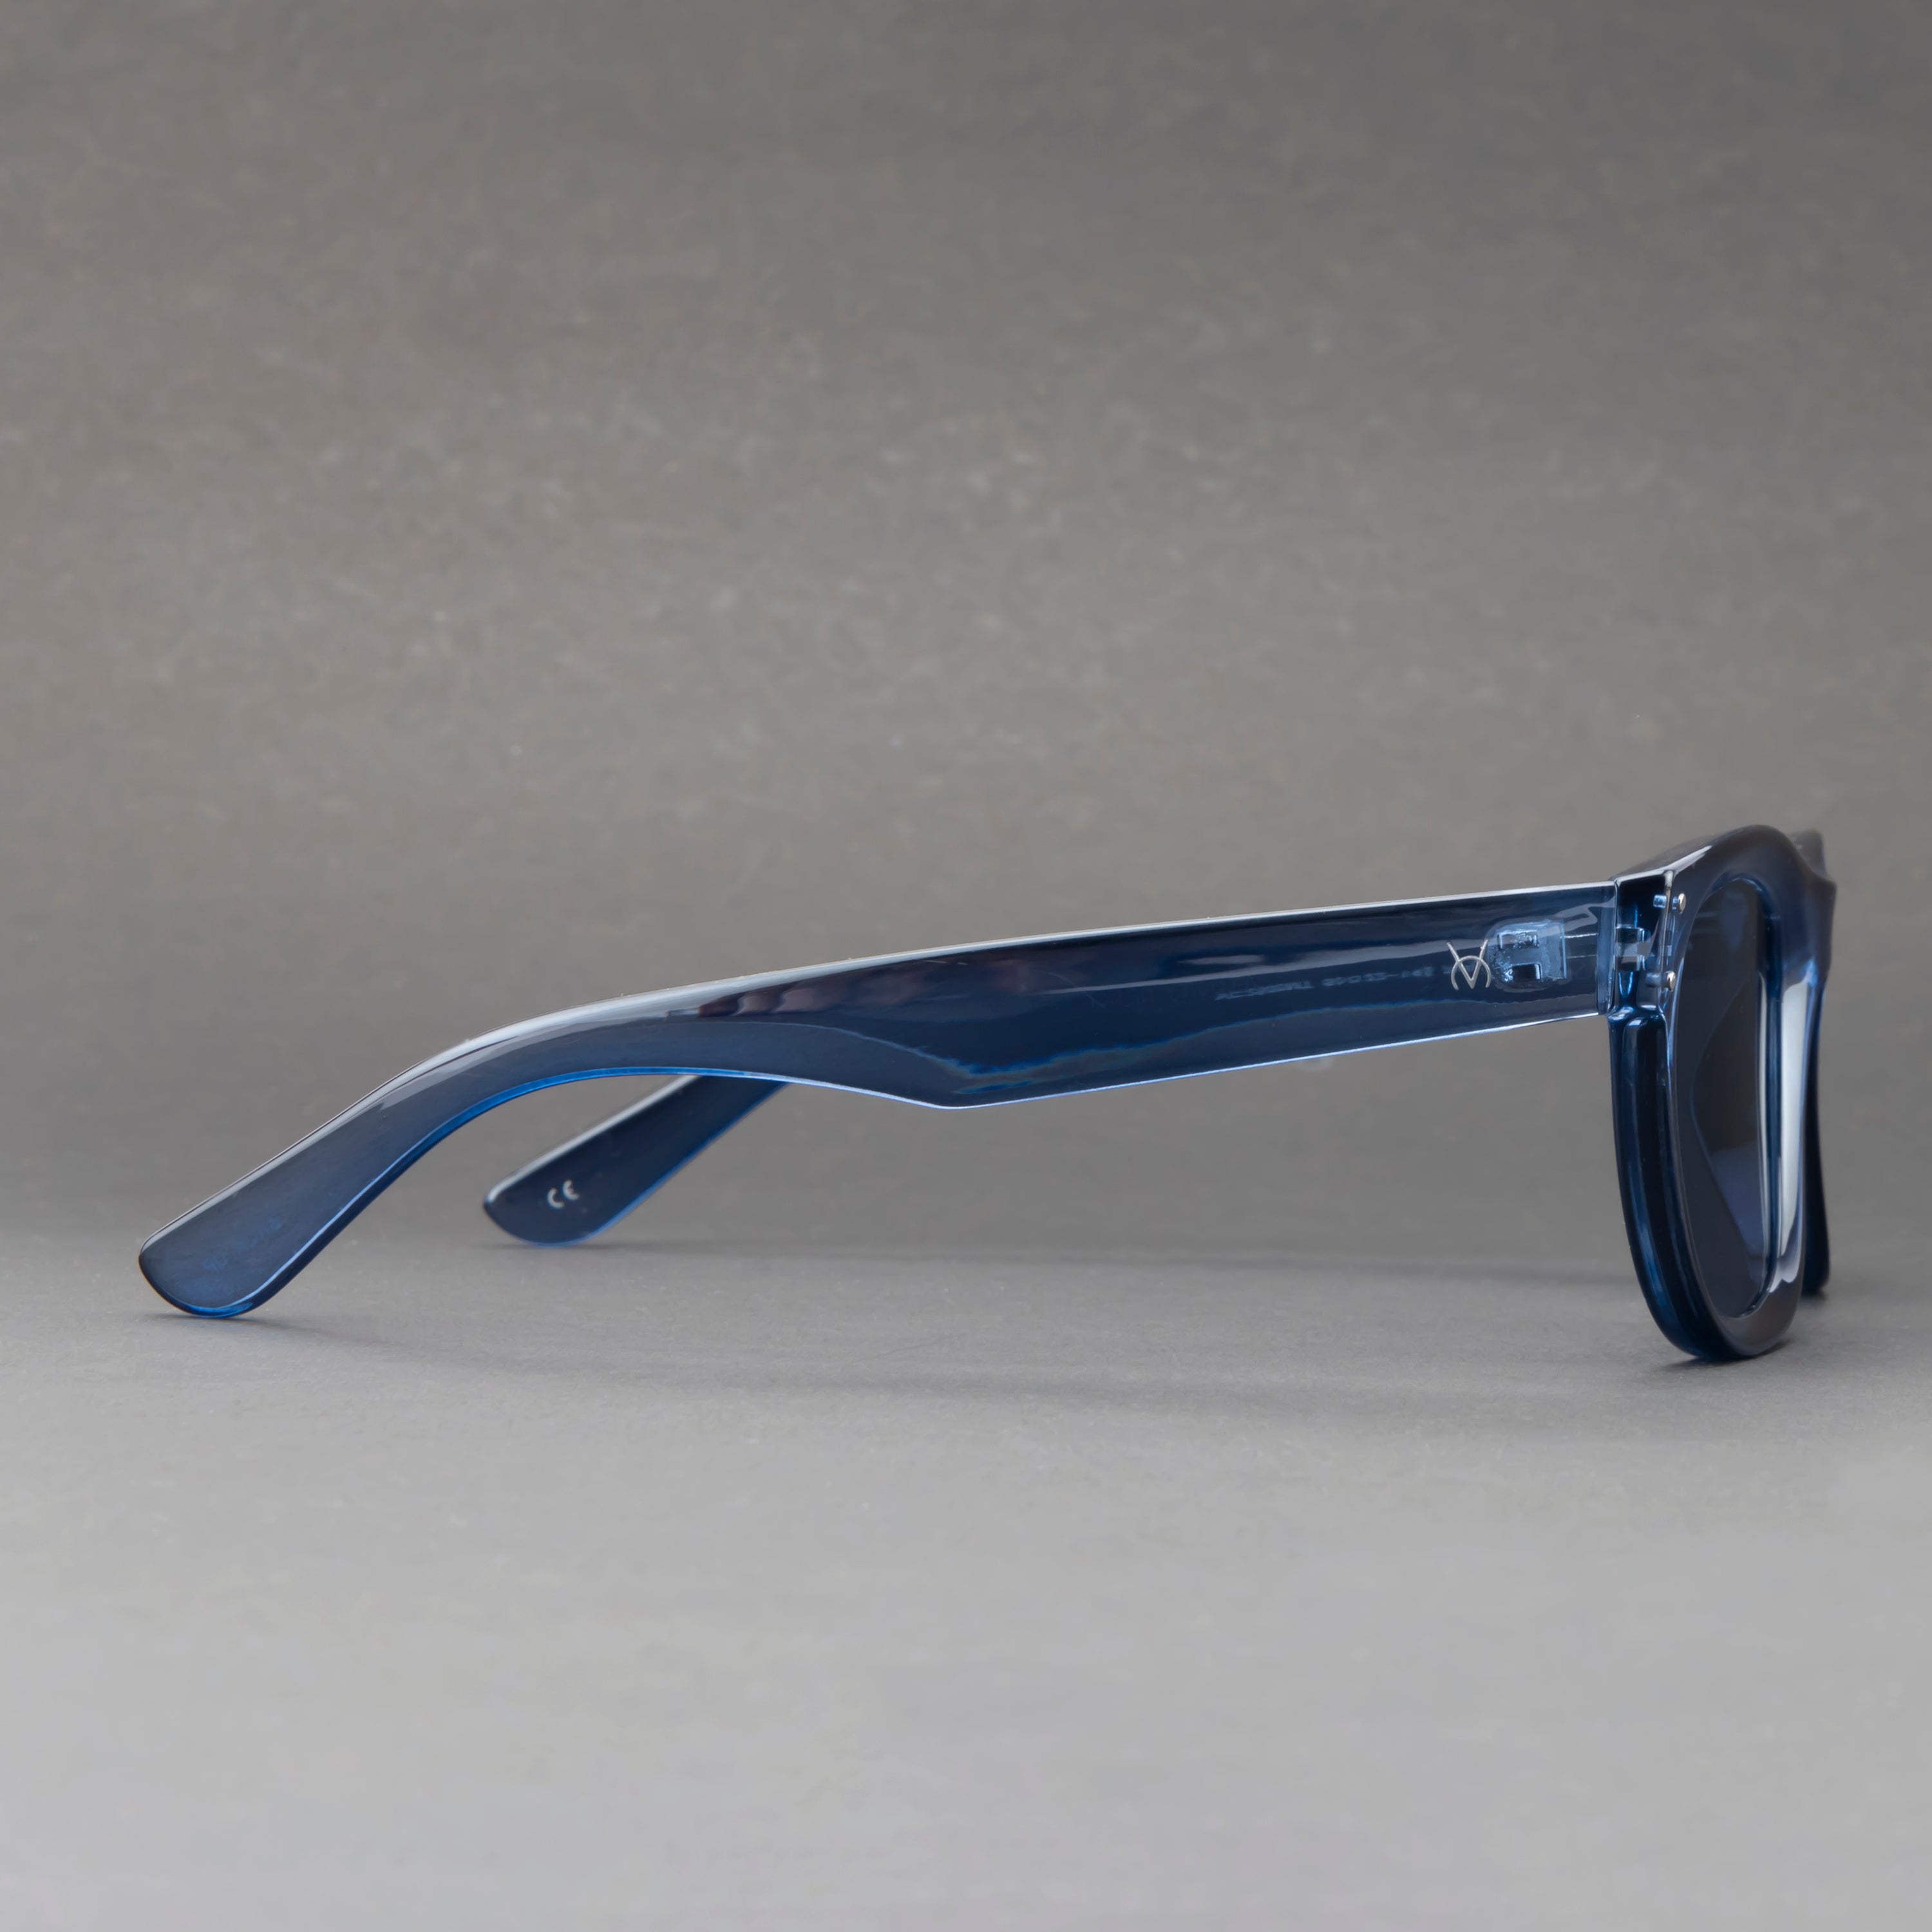 Speksee Full Rim Retro Polarized Reverse Sunglass for Men - Blue